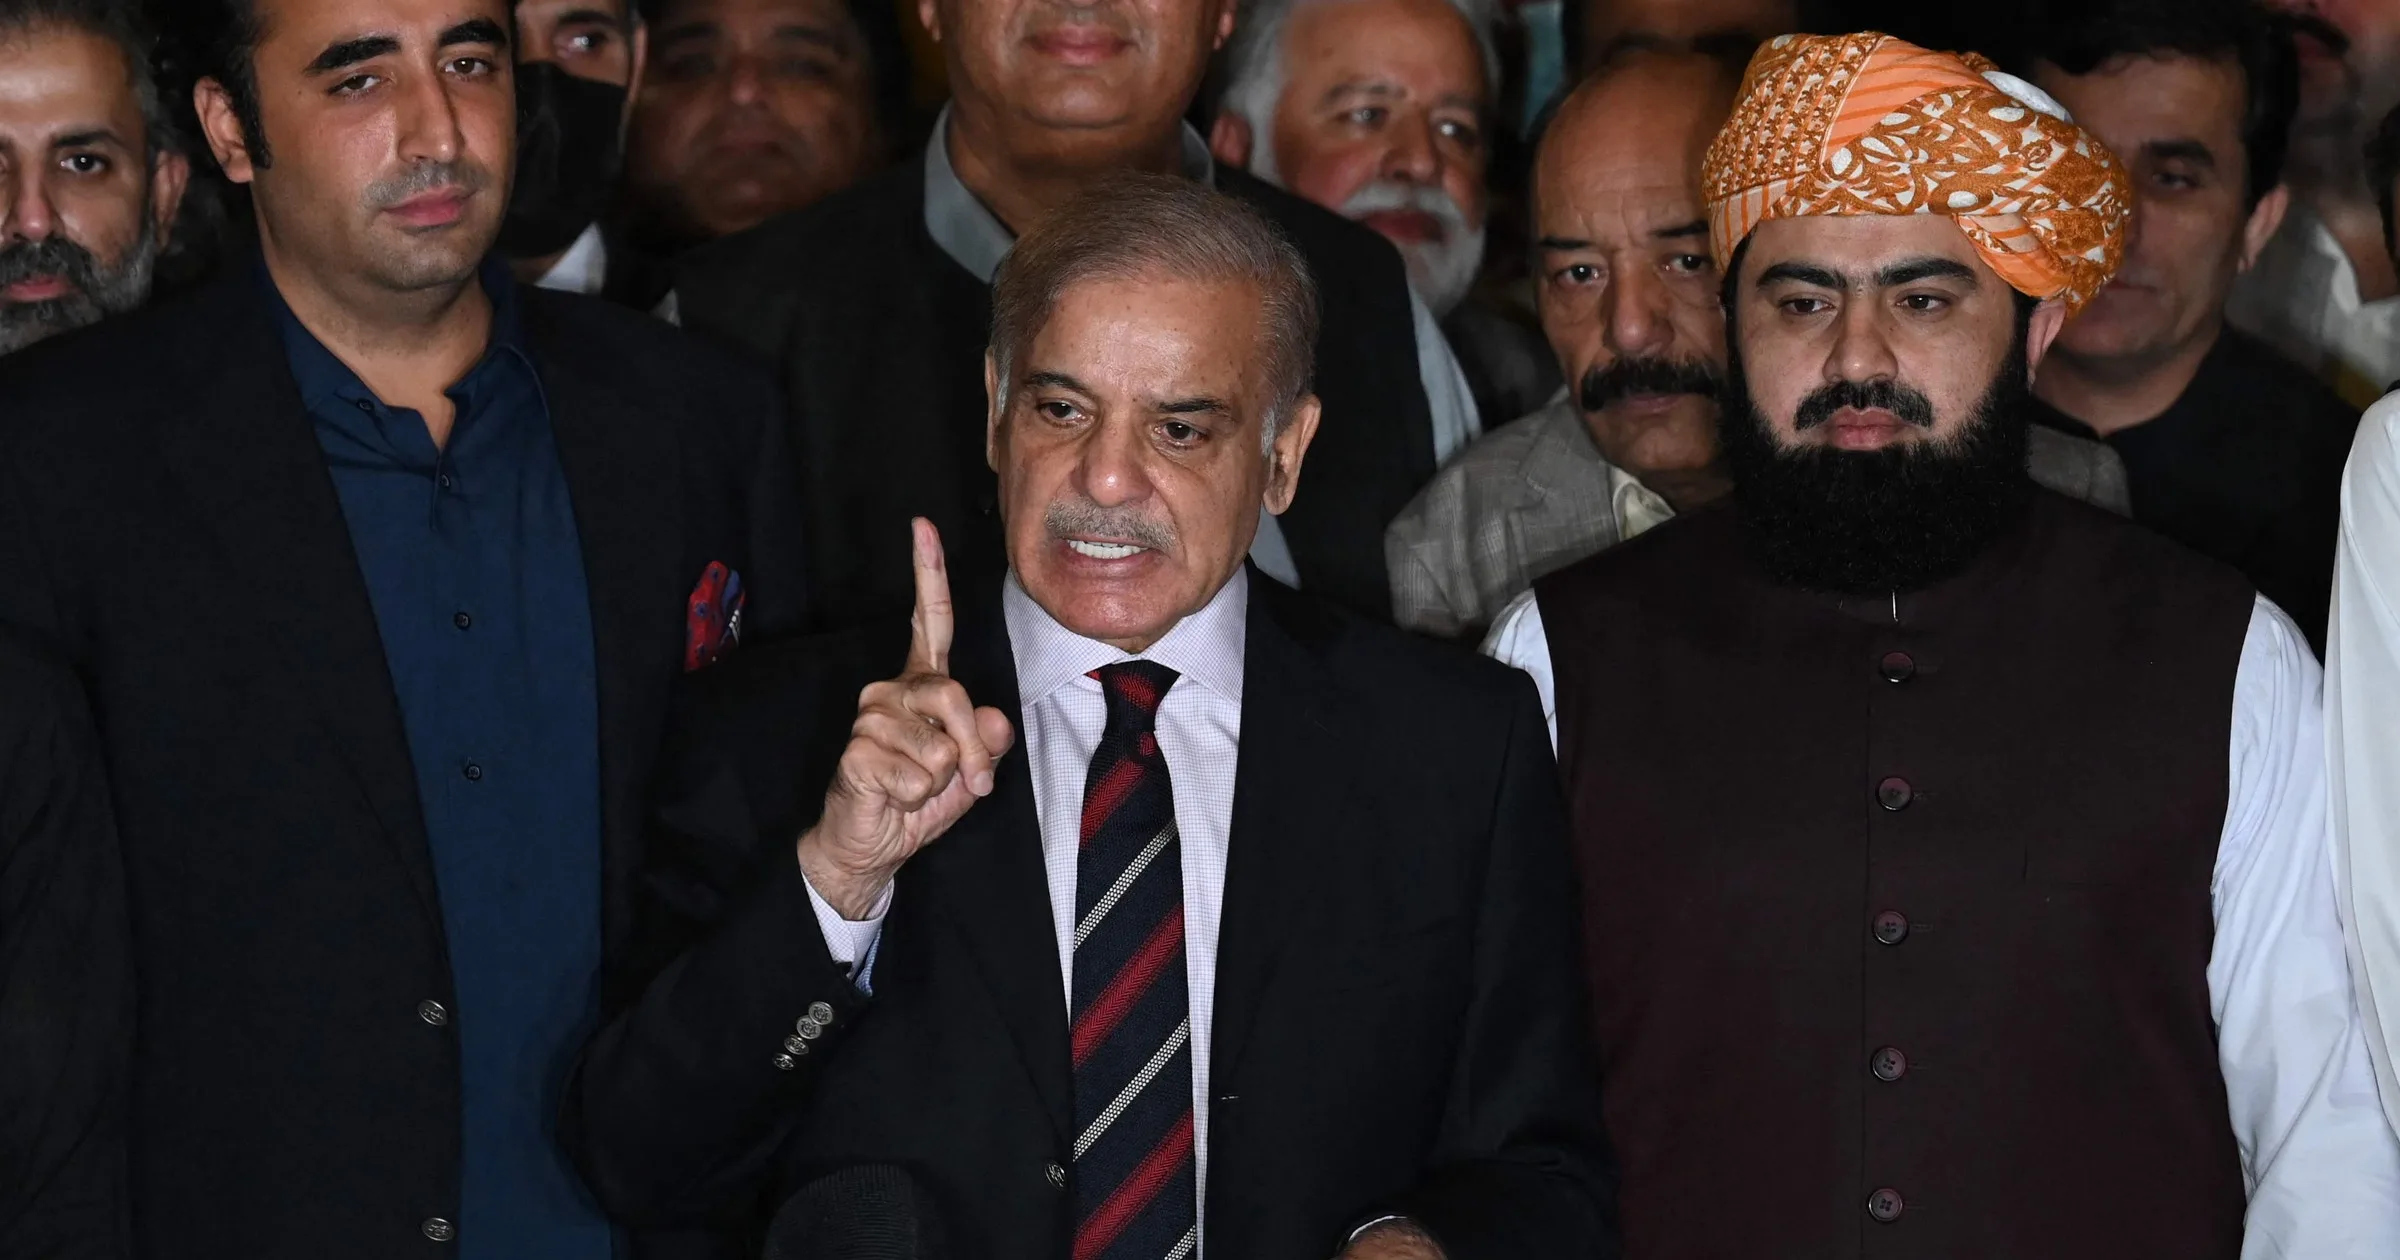 أدى شهباز شريف أمس الاثنين اليمين الدستورية رئيسا لوزراء باكستان